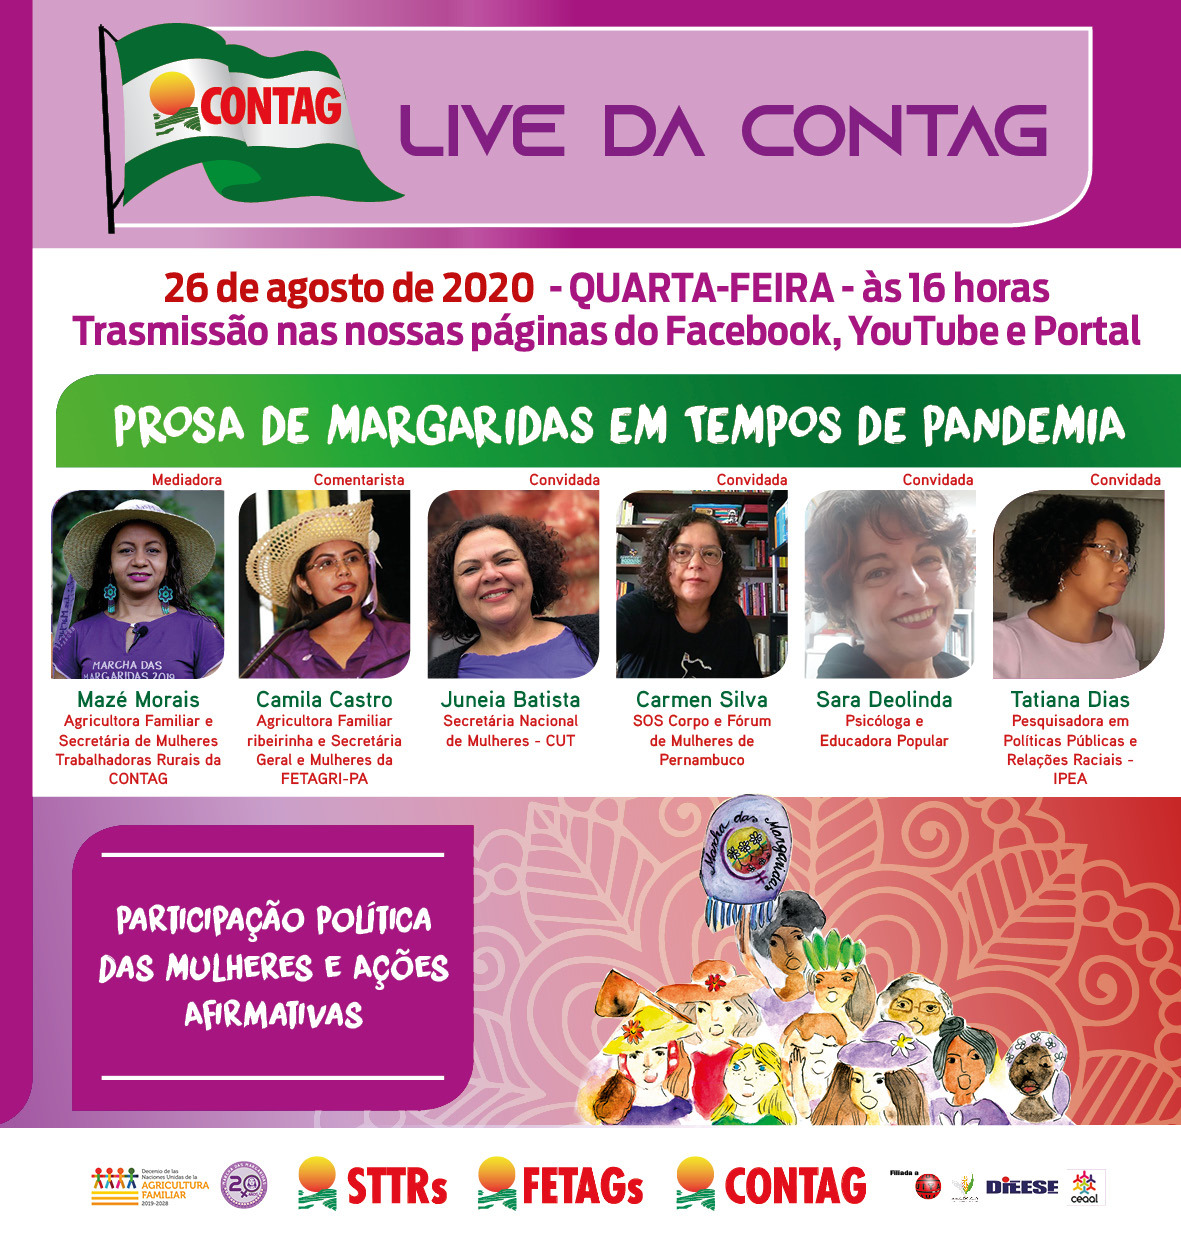 Live da Contag aborda participação das mulheres política